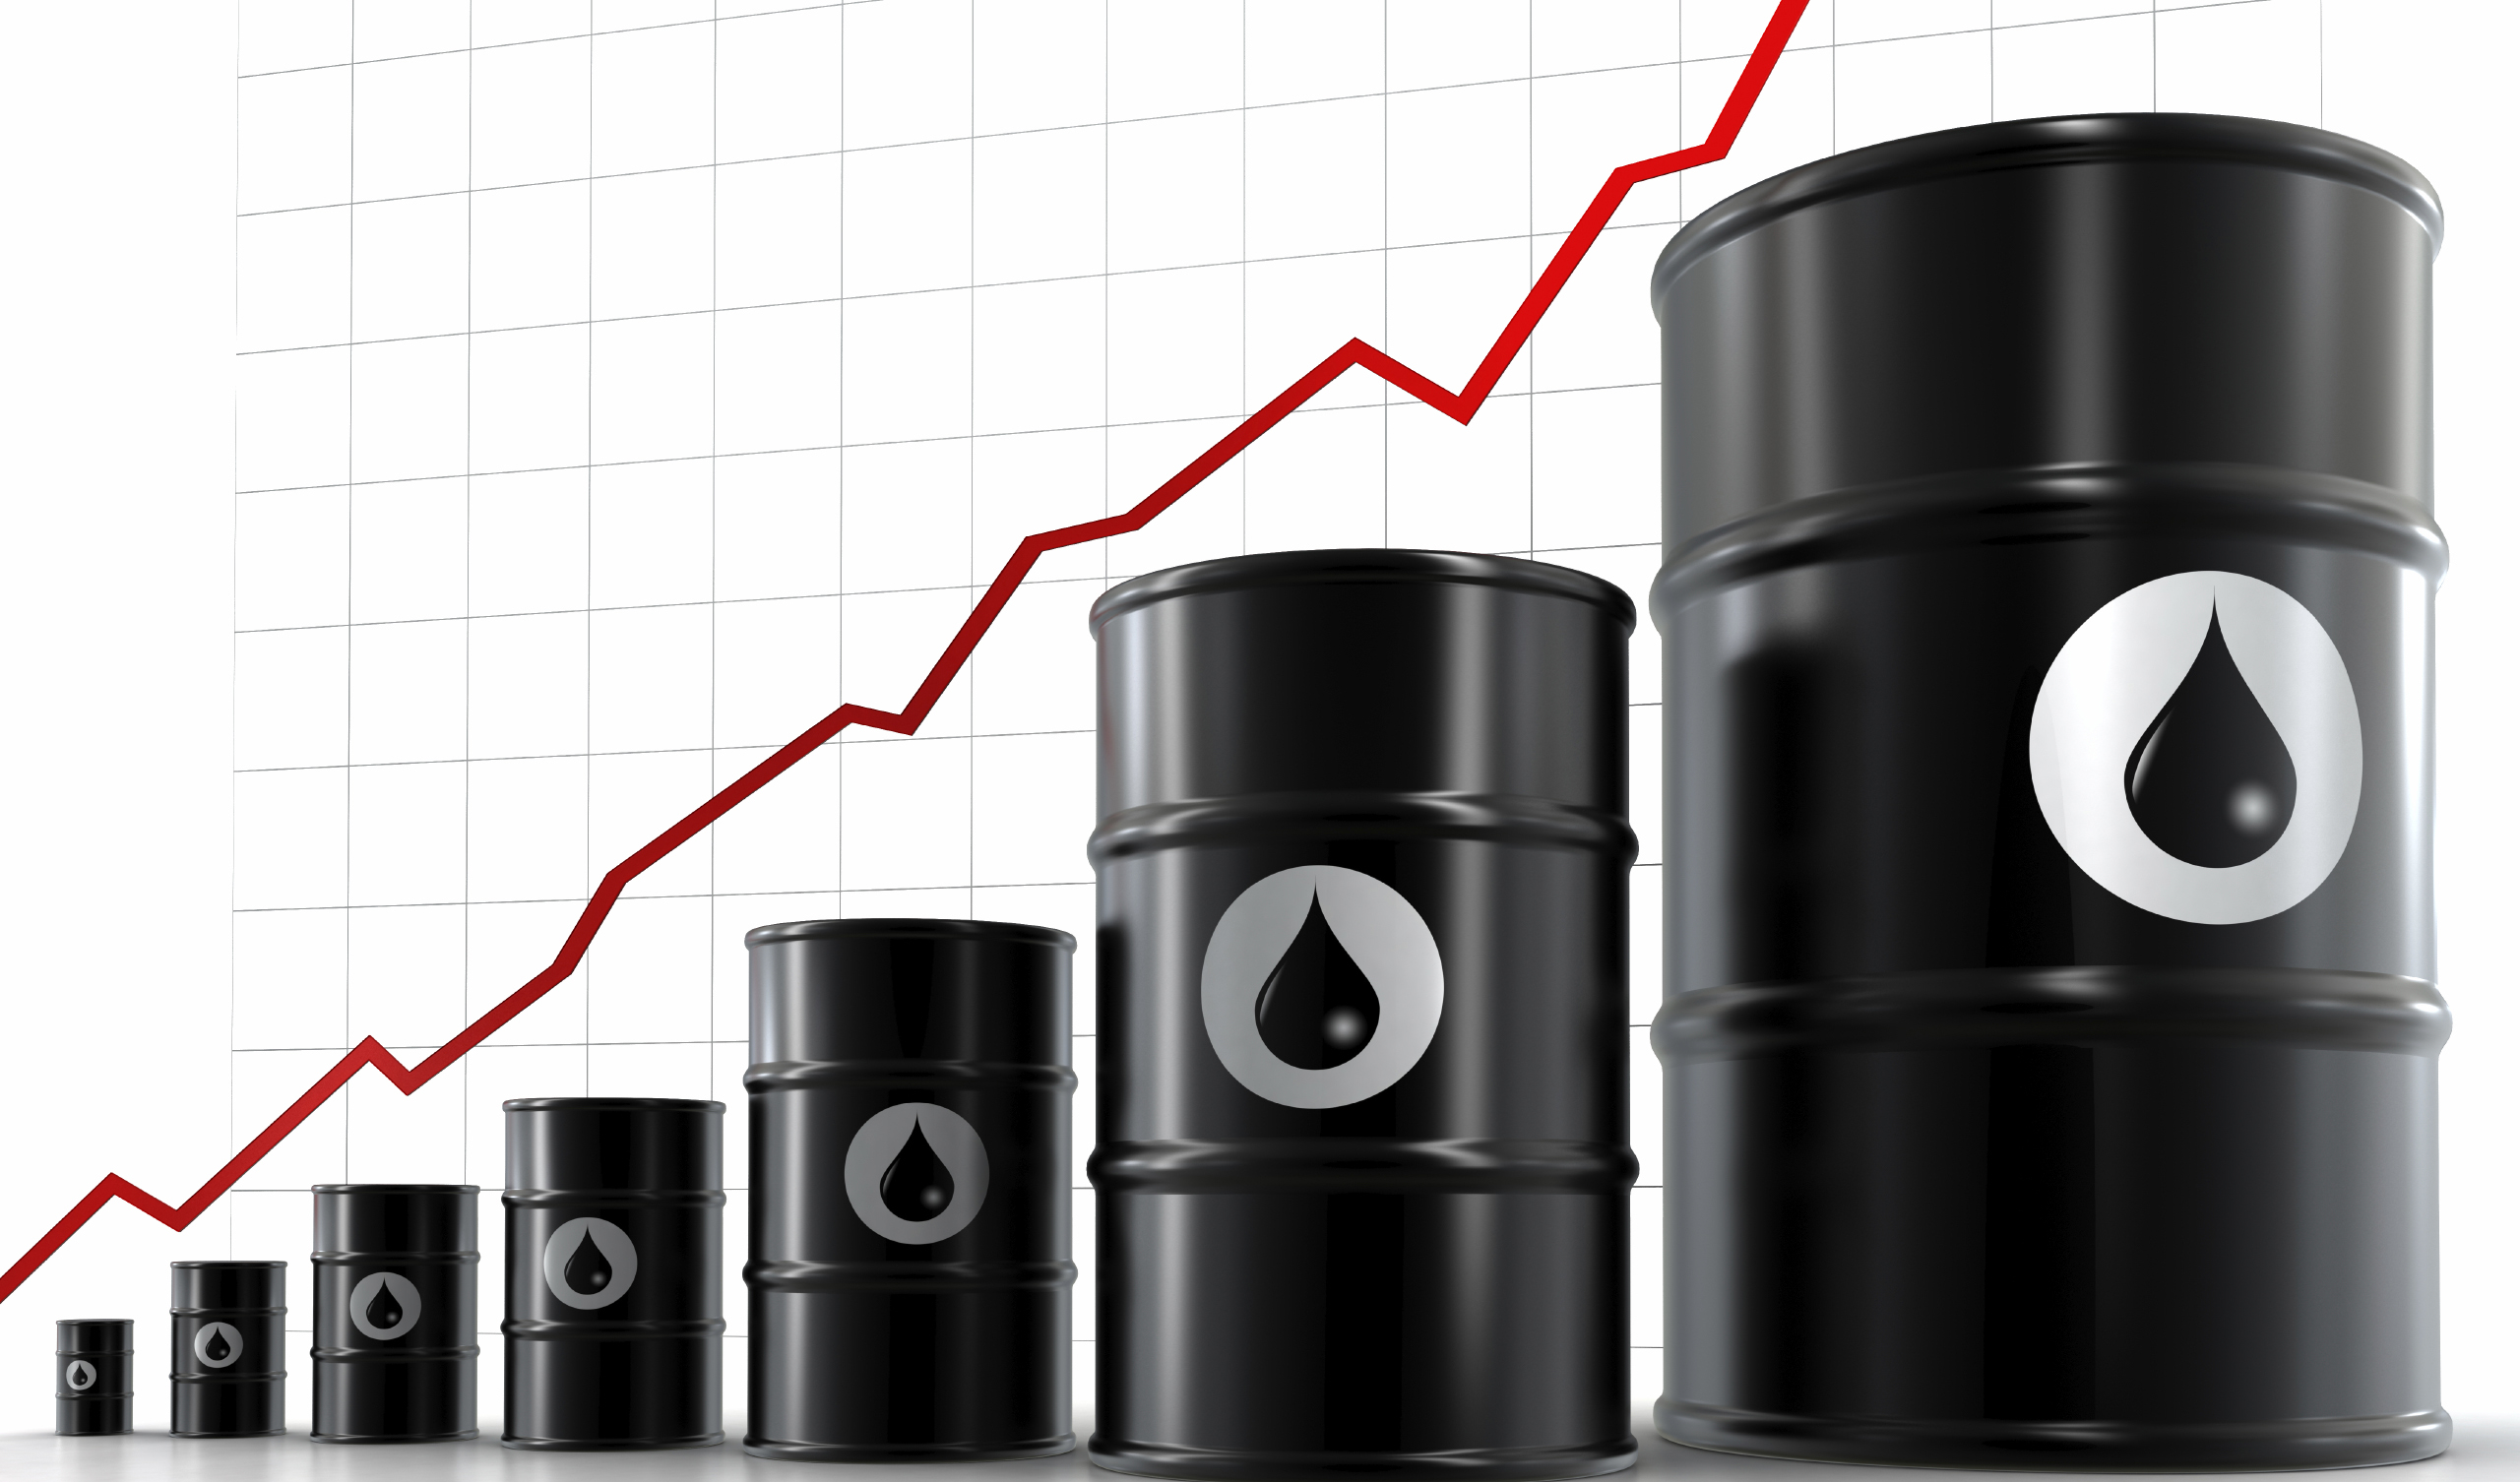 قیمت نفت با دلار ارزان صعودی شد